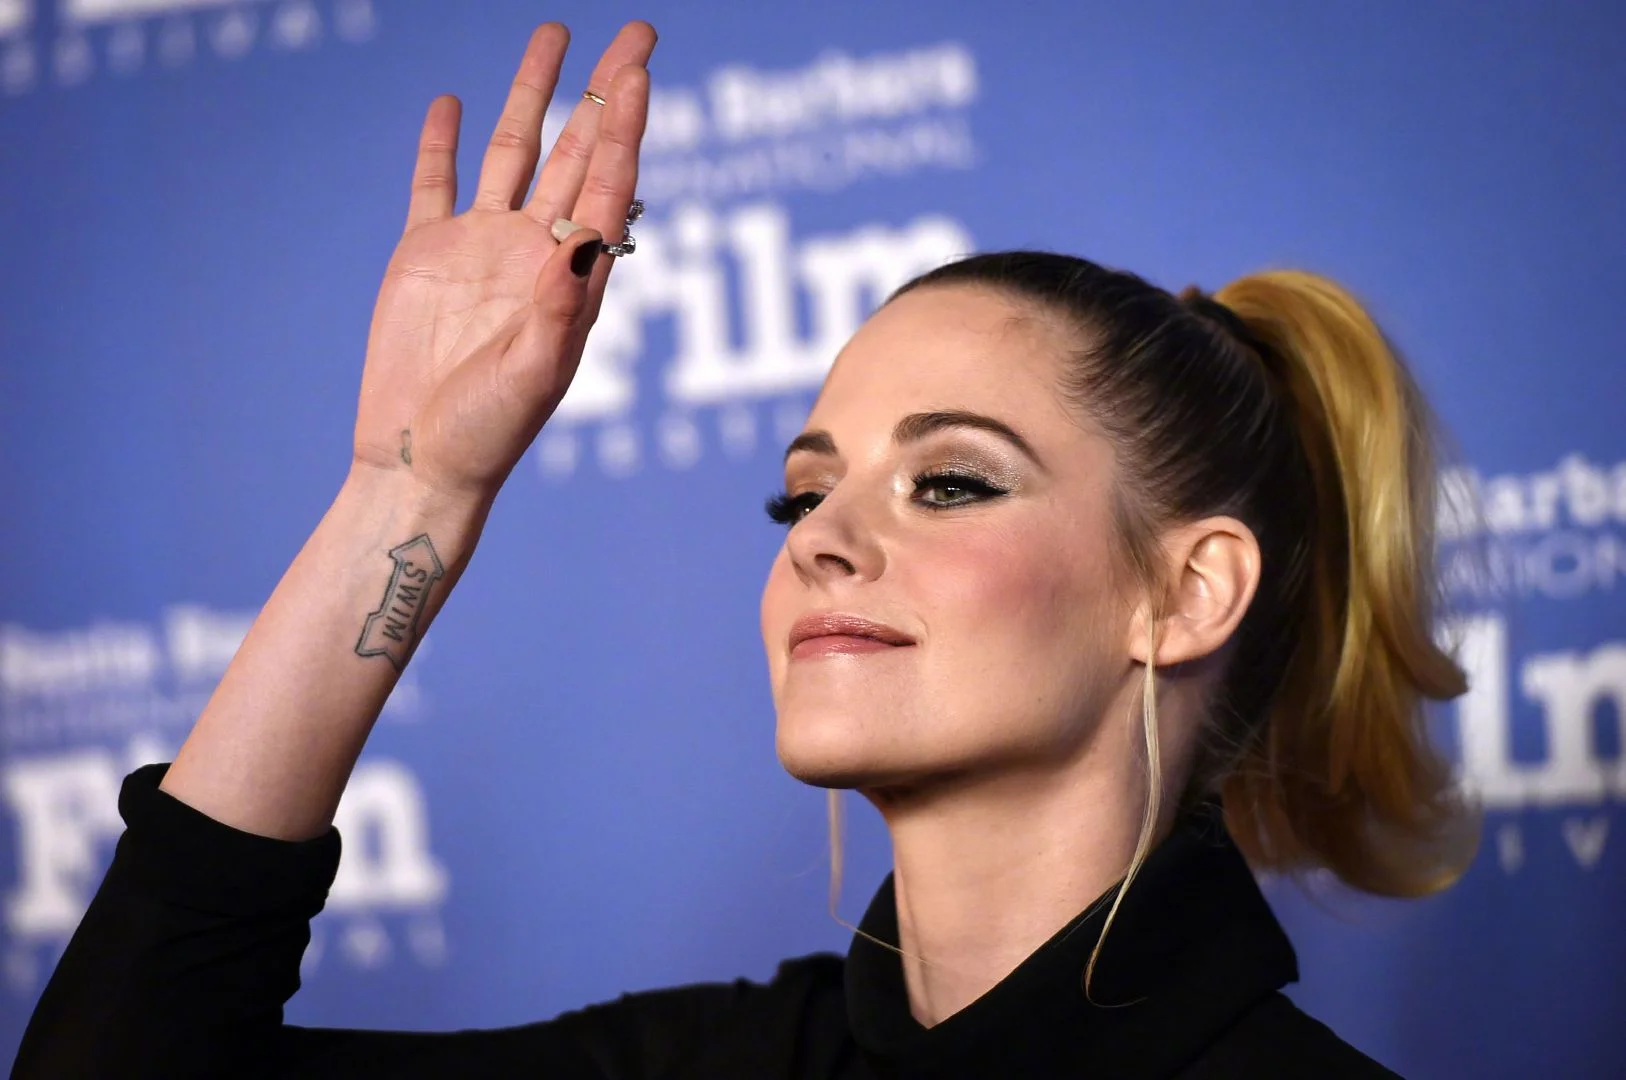 Kristen Stewart receives Santa Barbara International Film Festival "American Riviera Award" ​​​